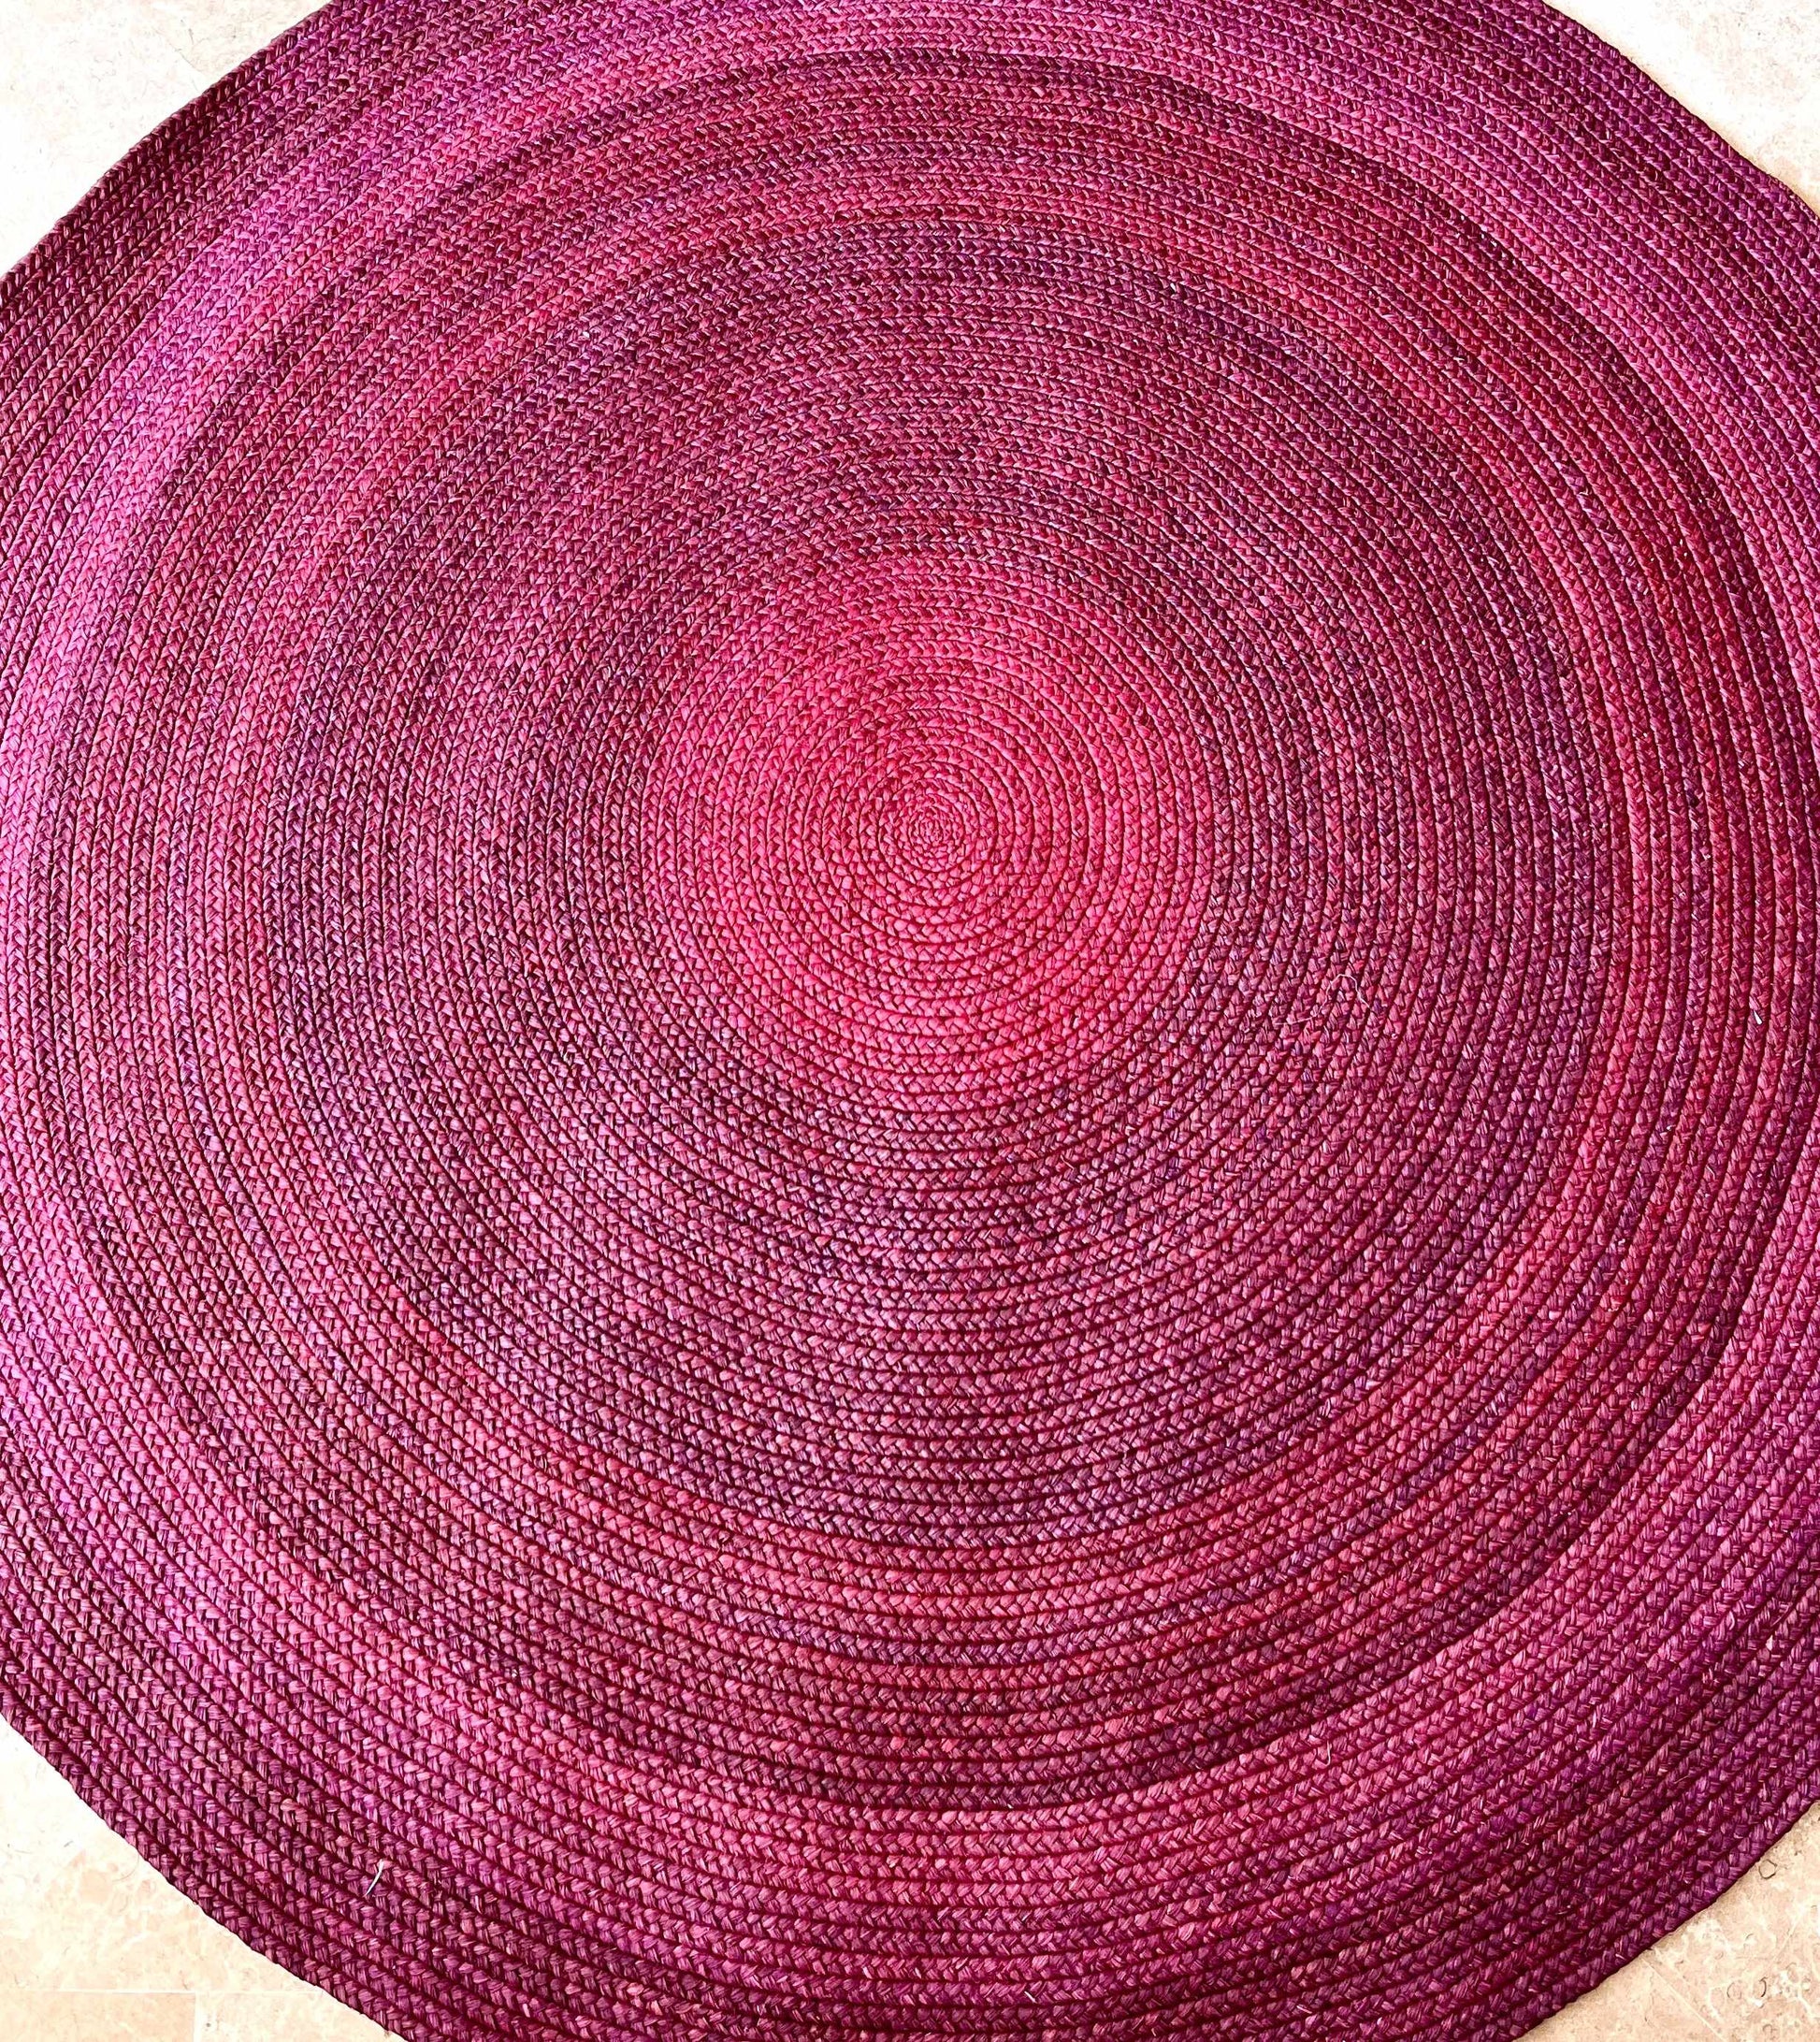 Tapis rond en raphia rose indien- Miriam- 210 cm Intimani Ethnique chic